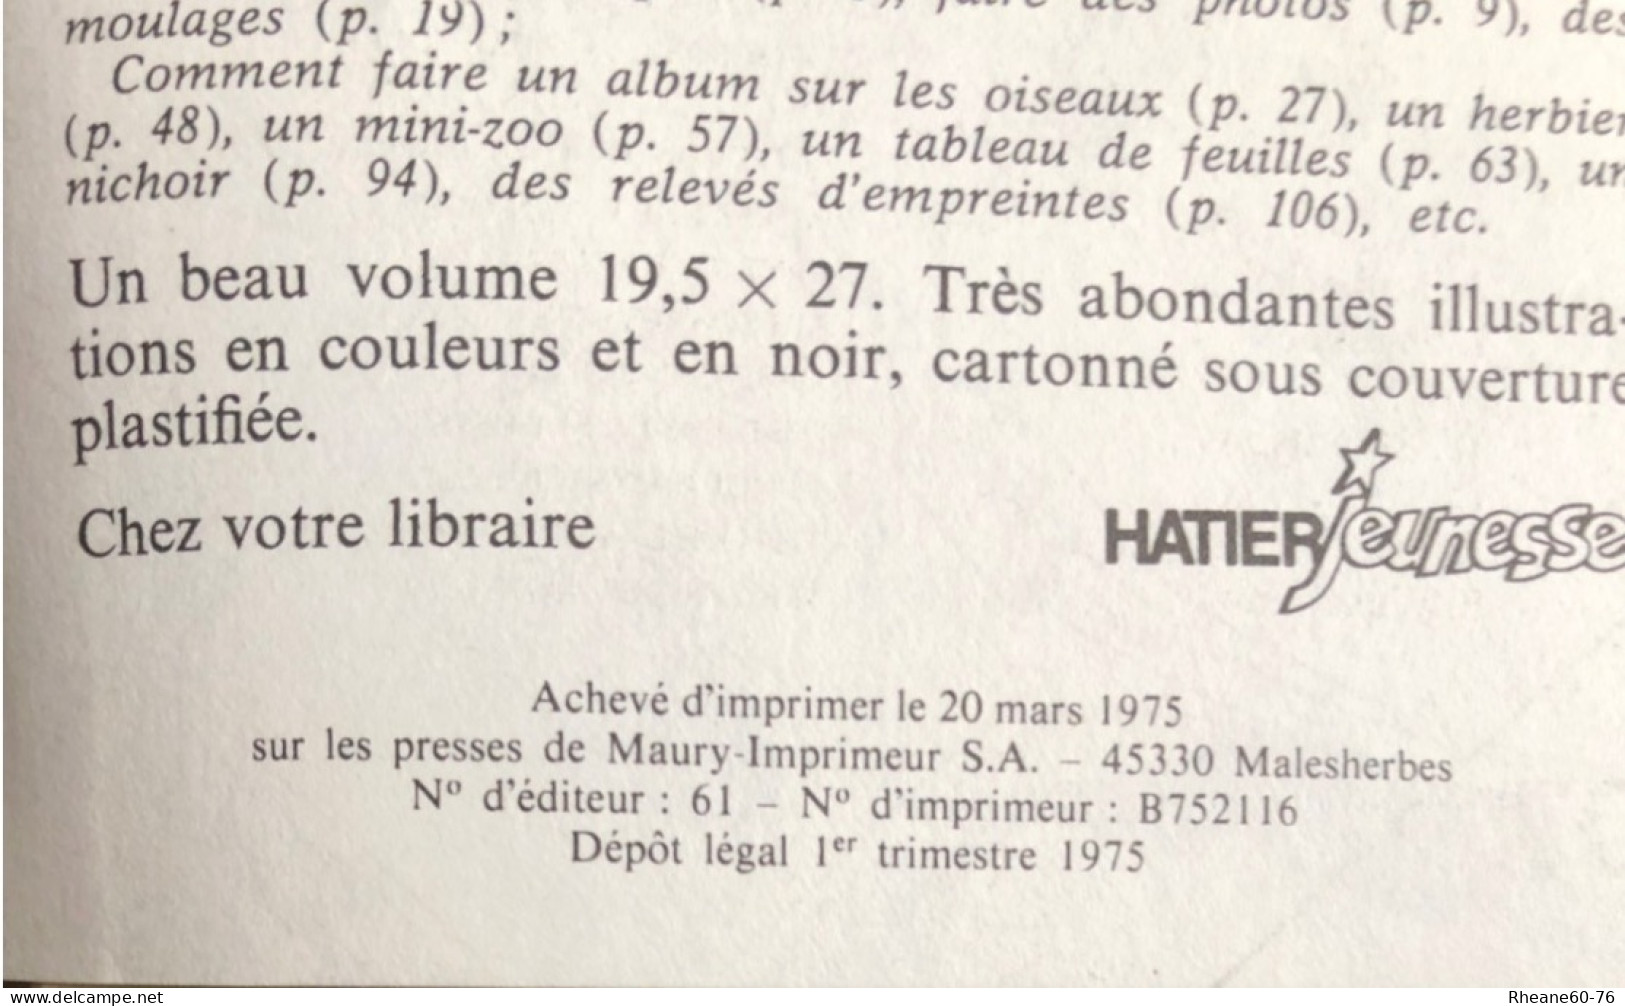 MESSIER 51 Ou L'impossible Retour - Anticipation De Christian Grenier - Bibliothèque De L'Amitié - 11/12 Ans - Bibliotheque De L'Amitie